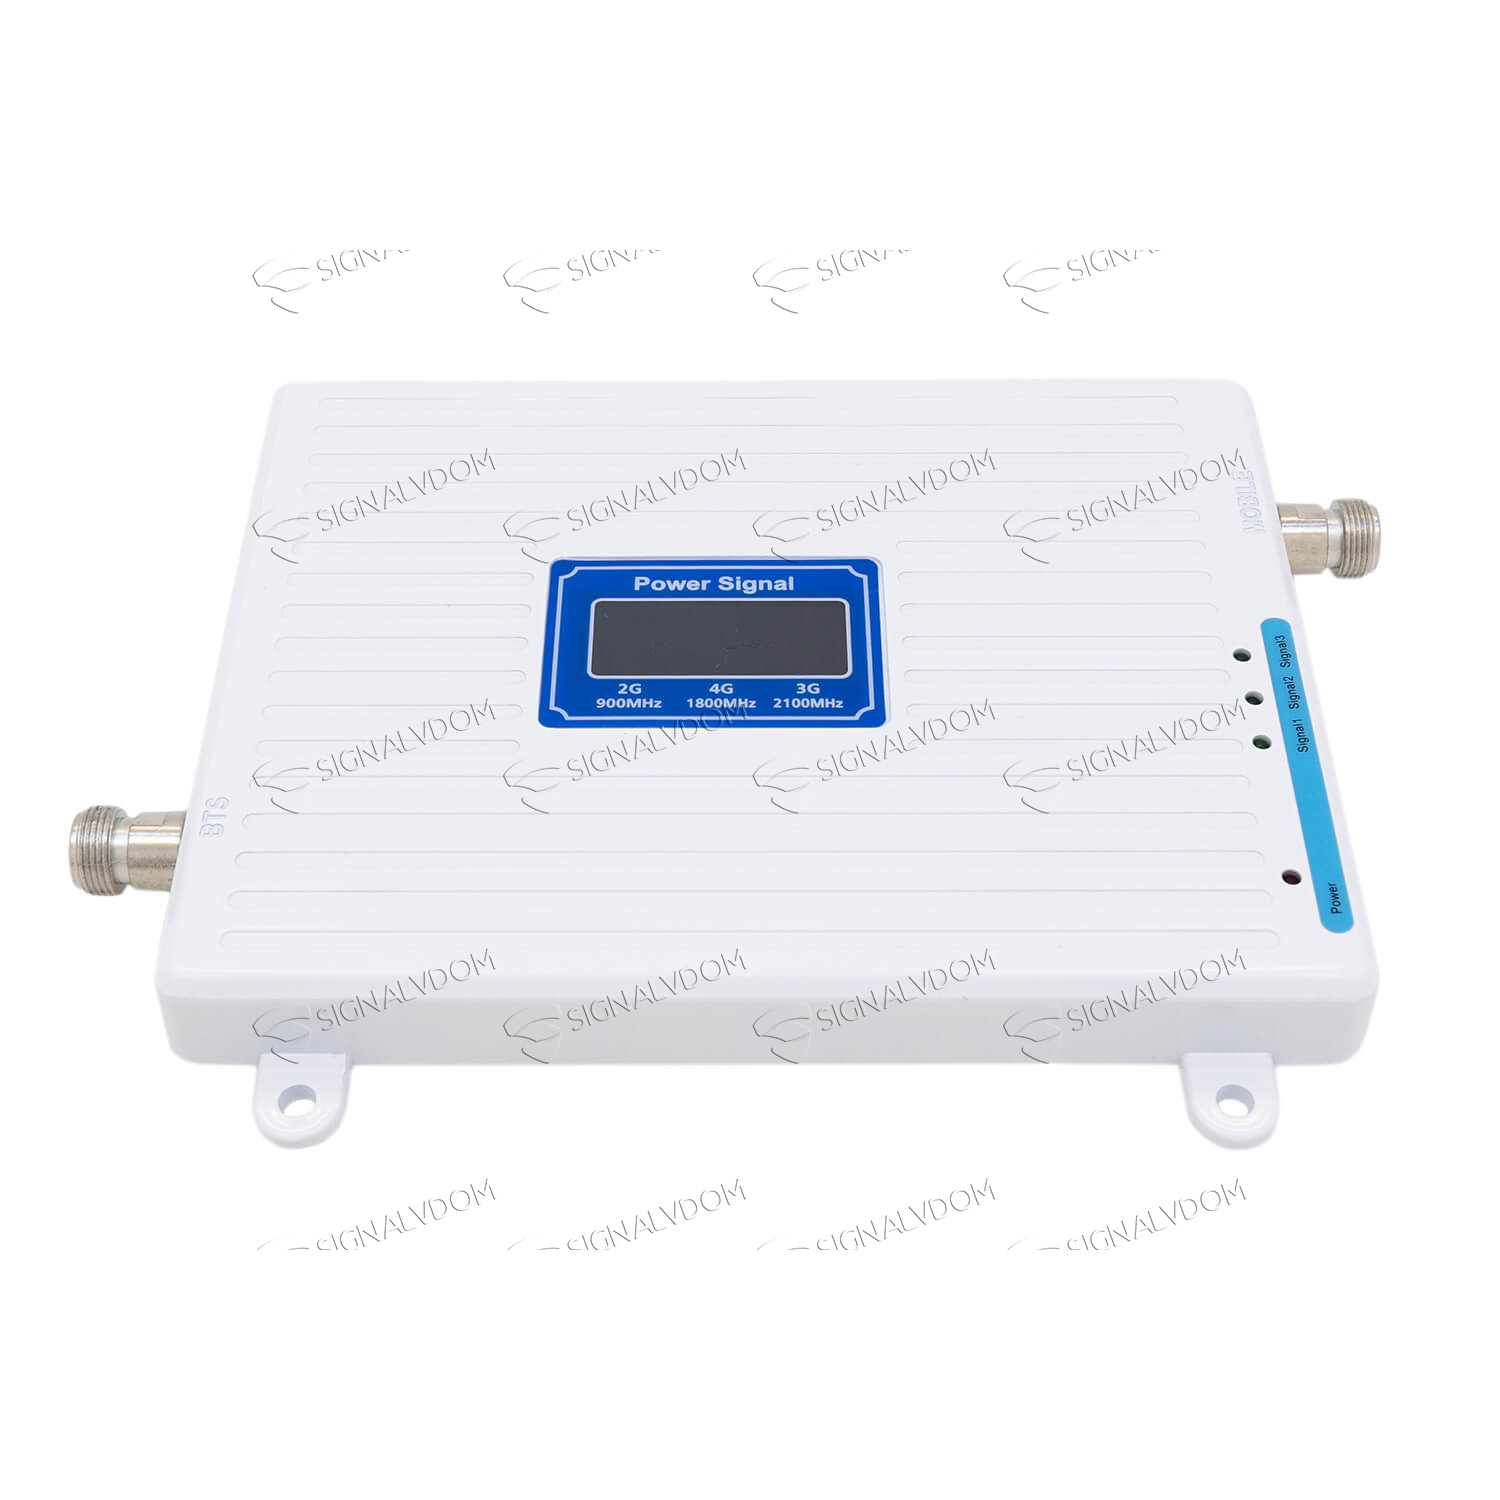 Усилитель сигнала Power Signal белый 900/1800/2100 MHz (для 2G, 3G, 4G) 70 dBi, кабель 15 м., комплект - 4